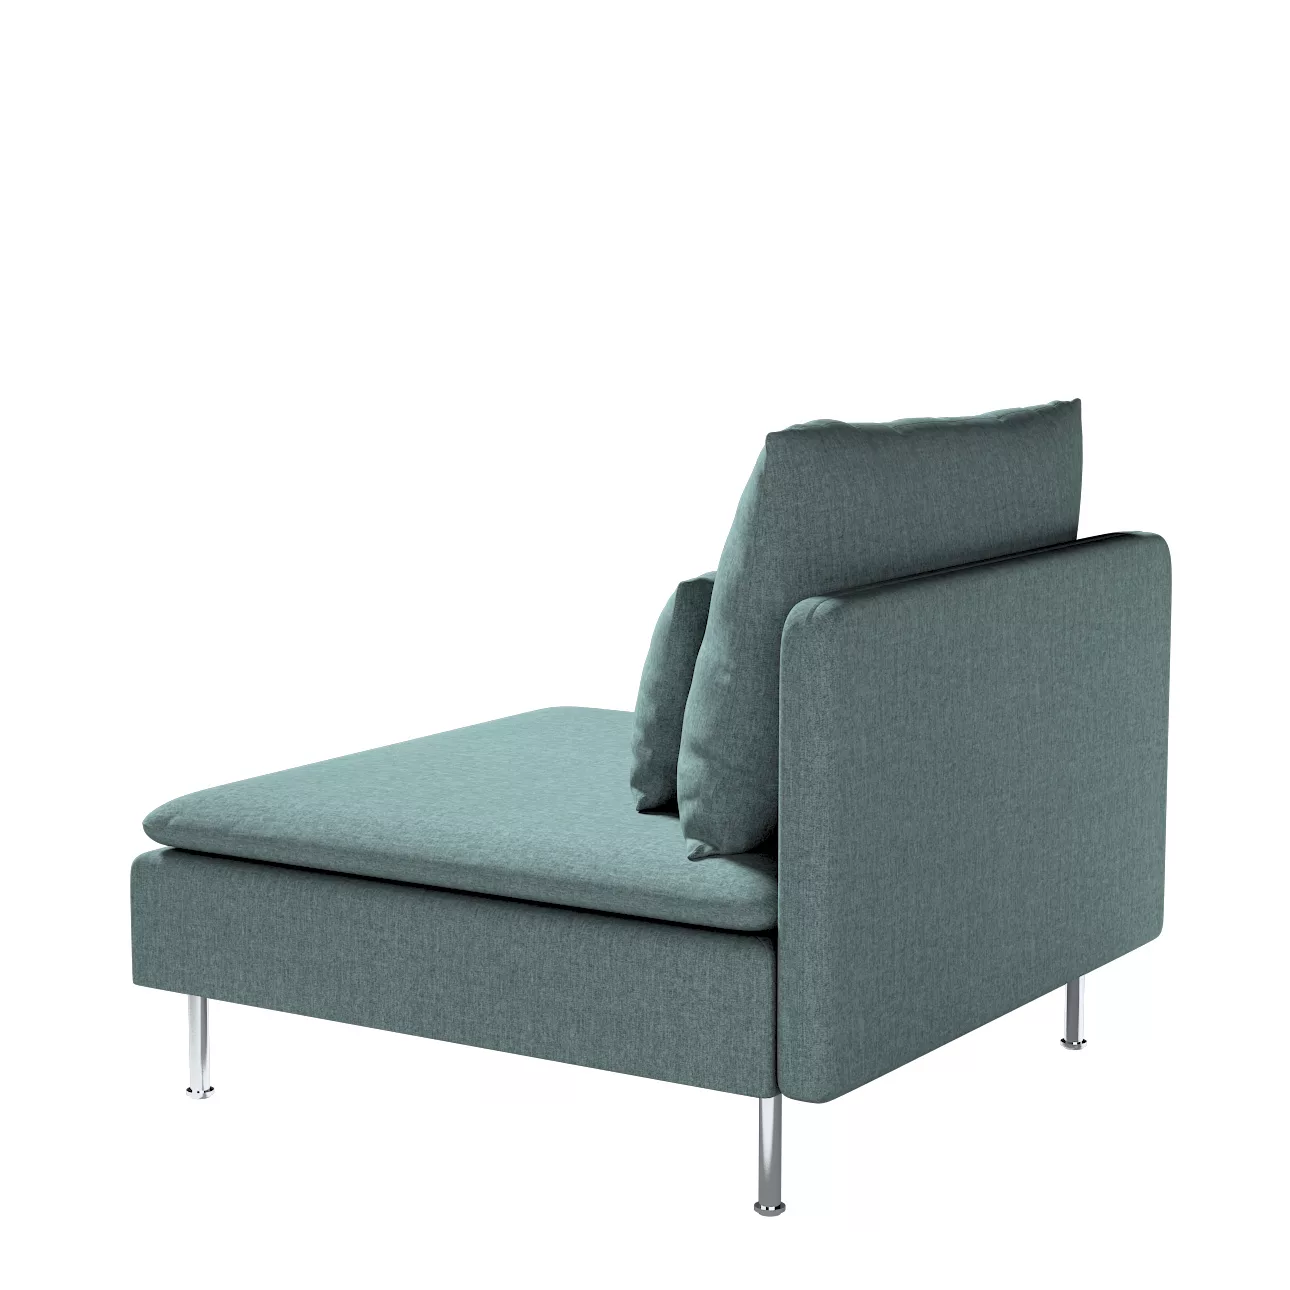 Bezug für Söderhamn Sitzelement 1, grau- blau, Bezug für Sitzelement 1, Cit günstig online kaufen